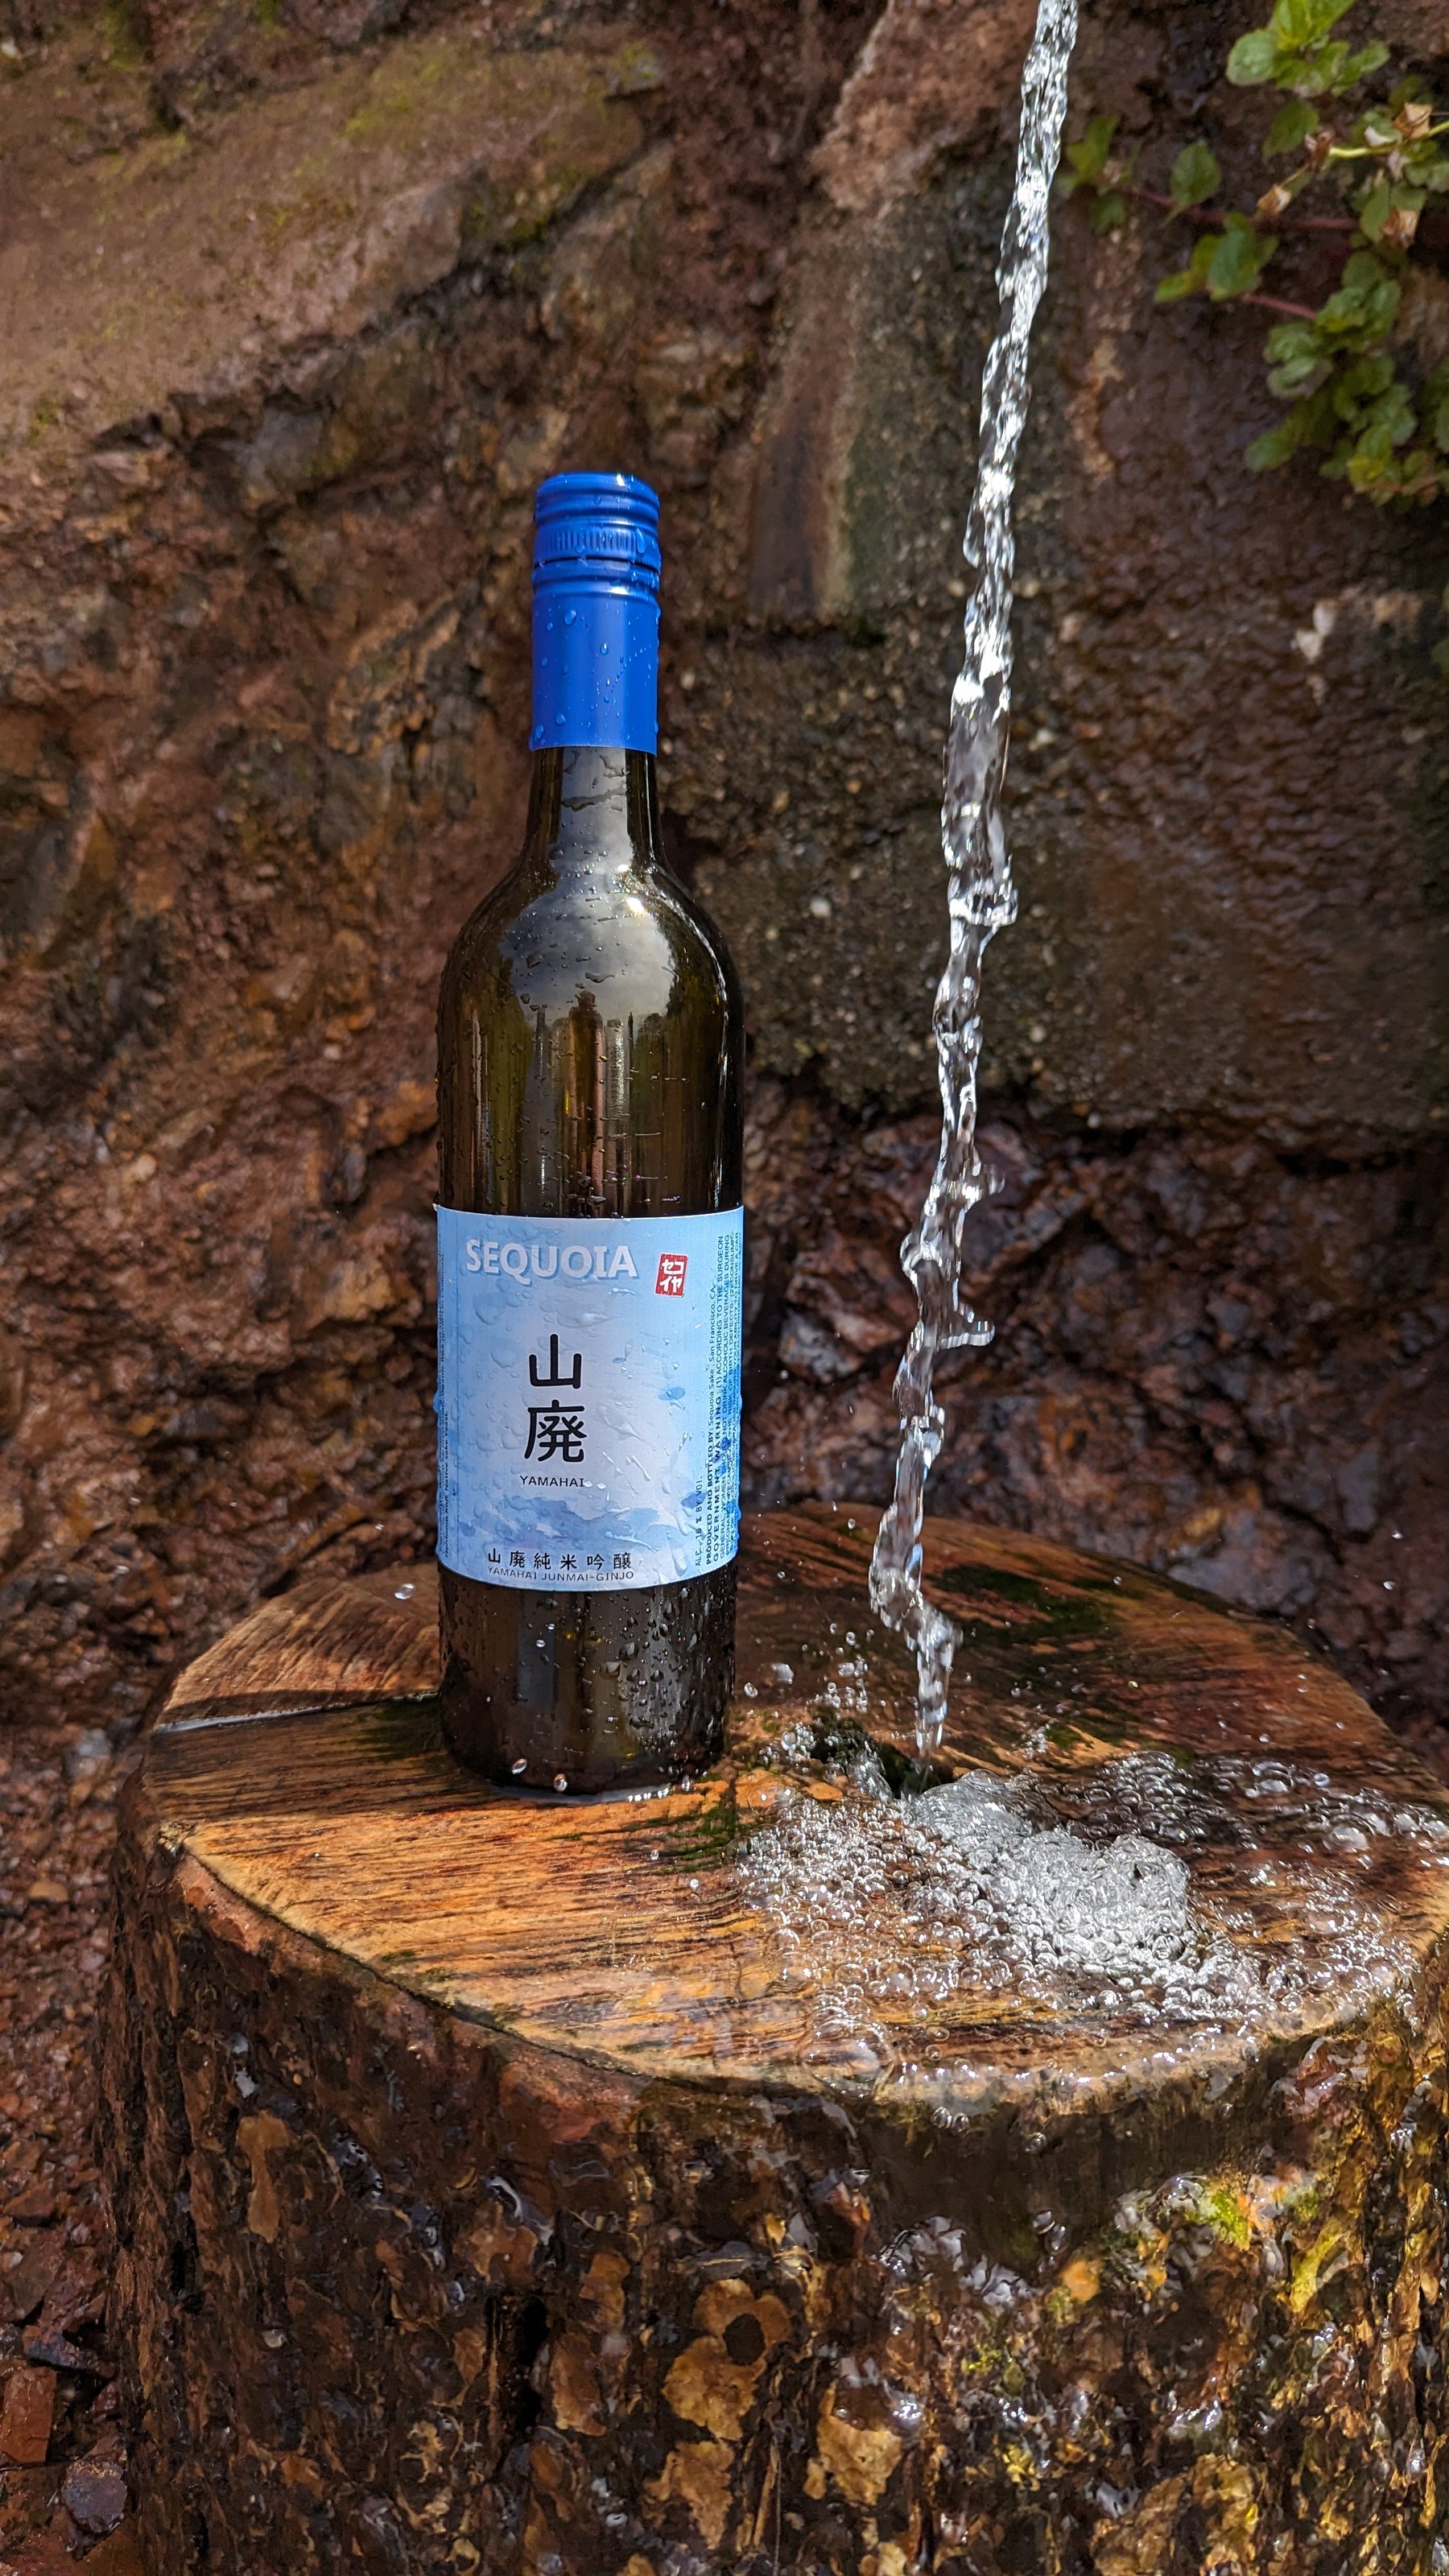 In-Store Tastings – November 18th Sequoia Sake